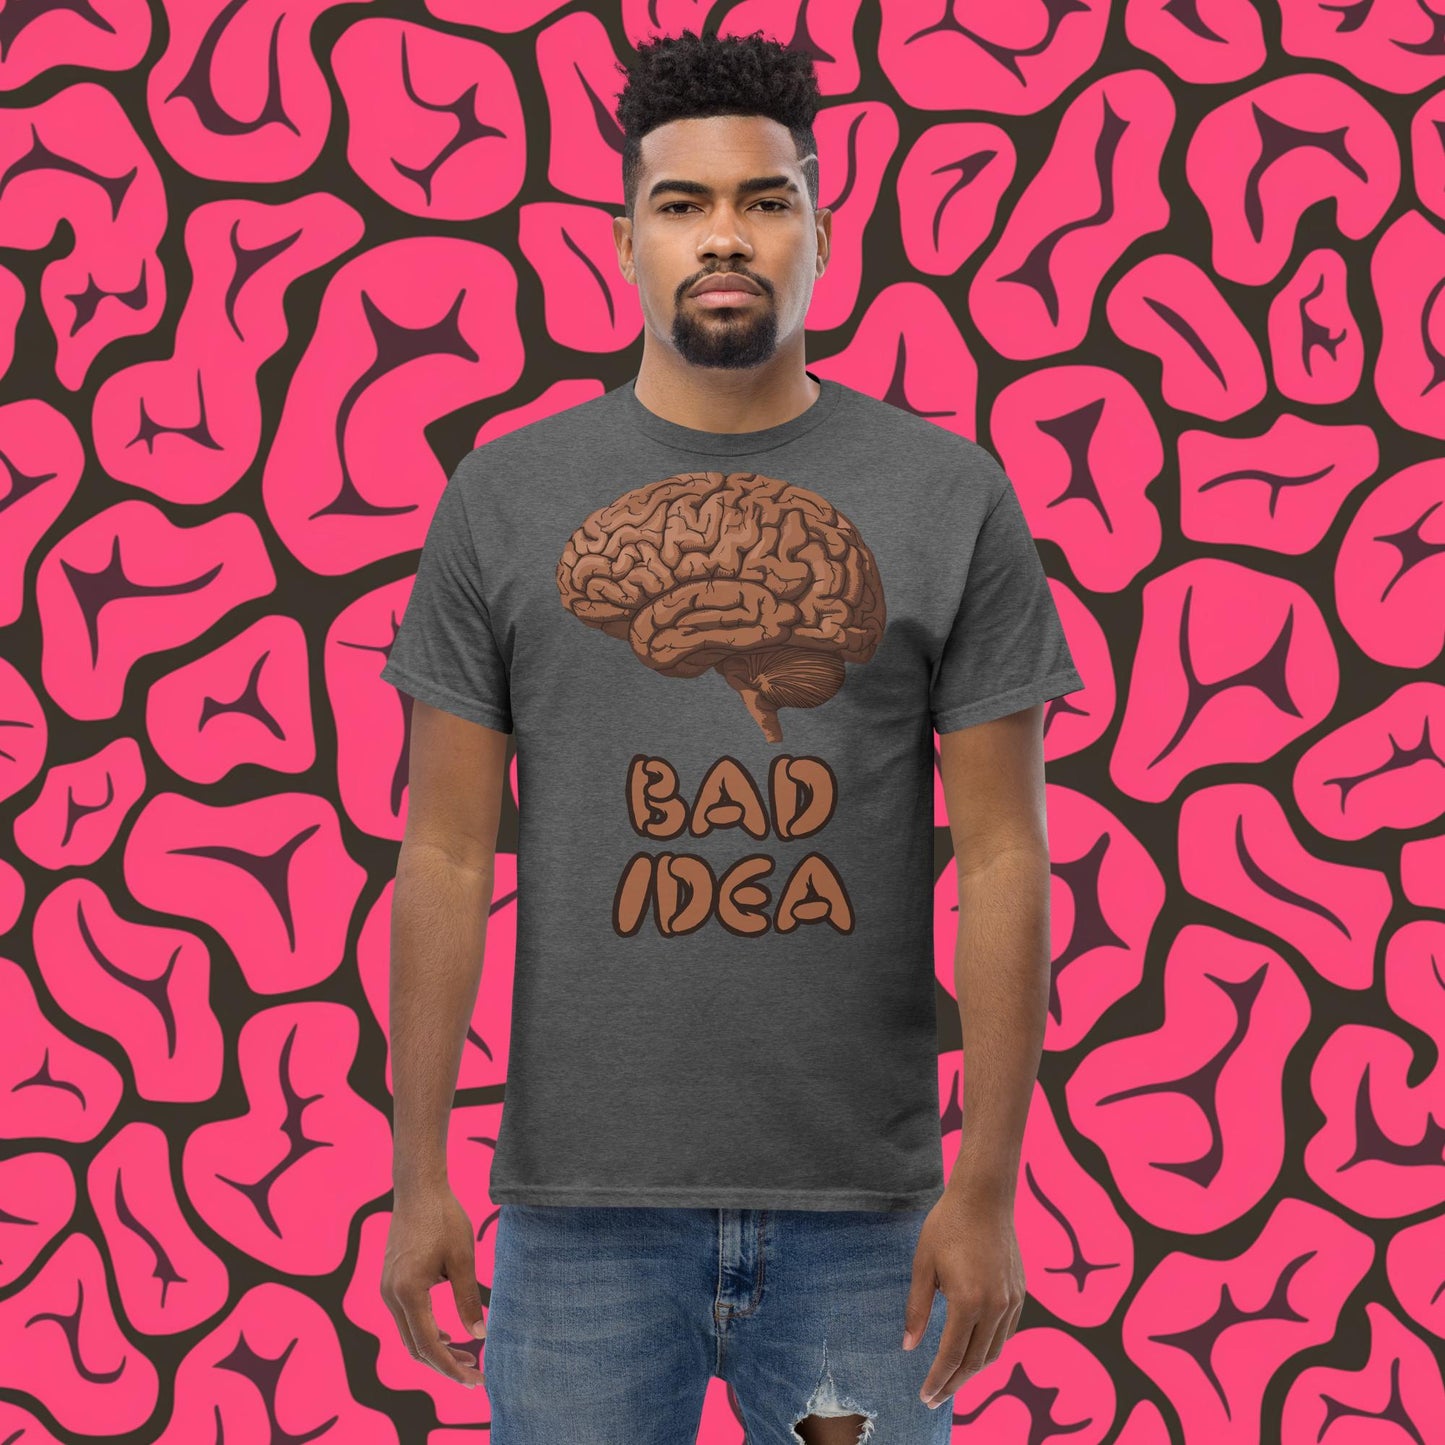 Bad Idea Shit Idea Brown Brains tee Next Cult Brand